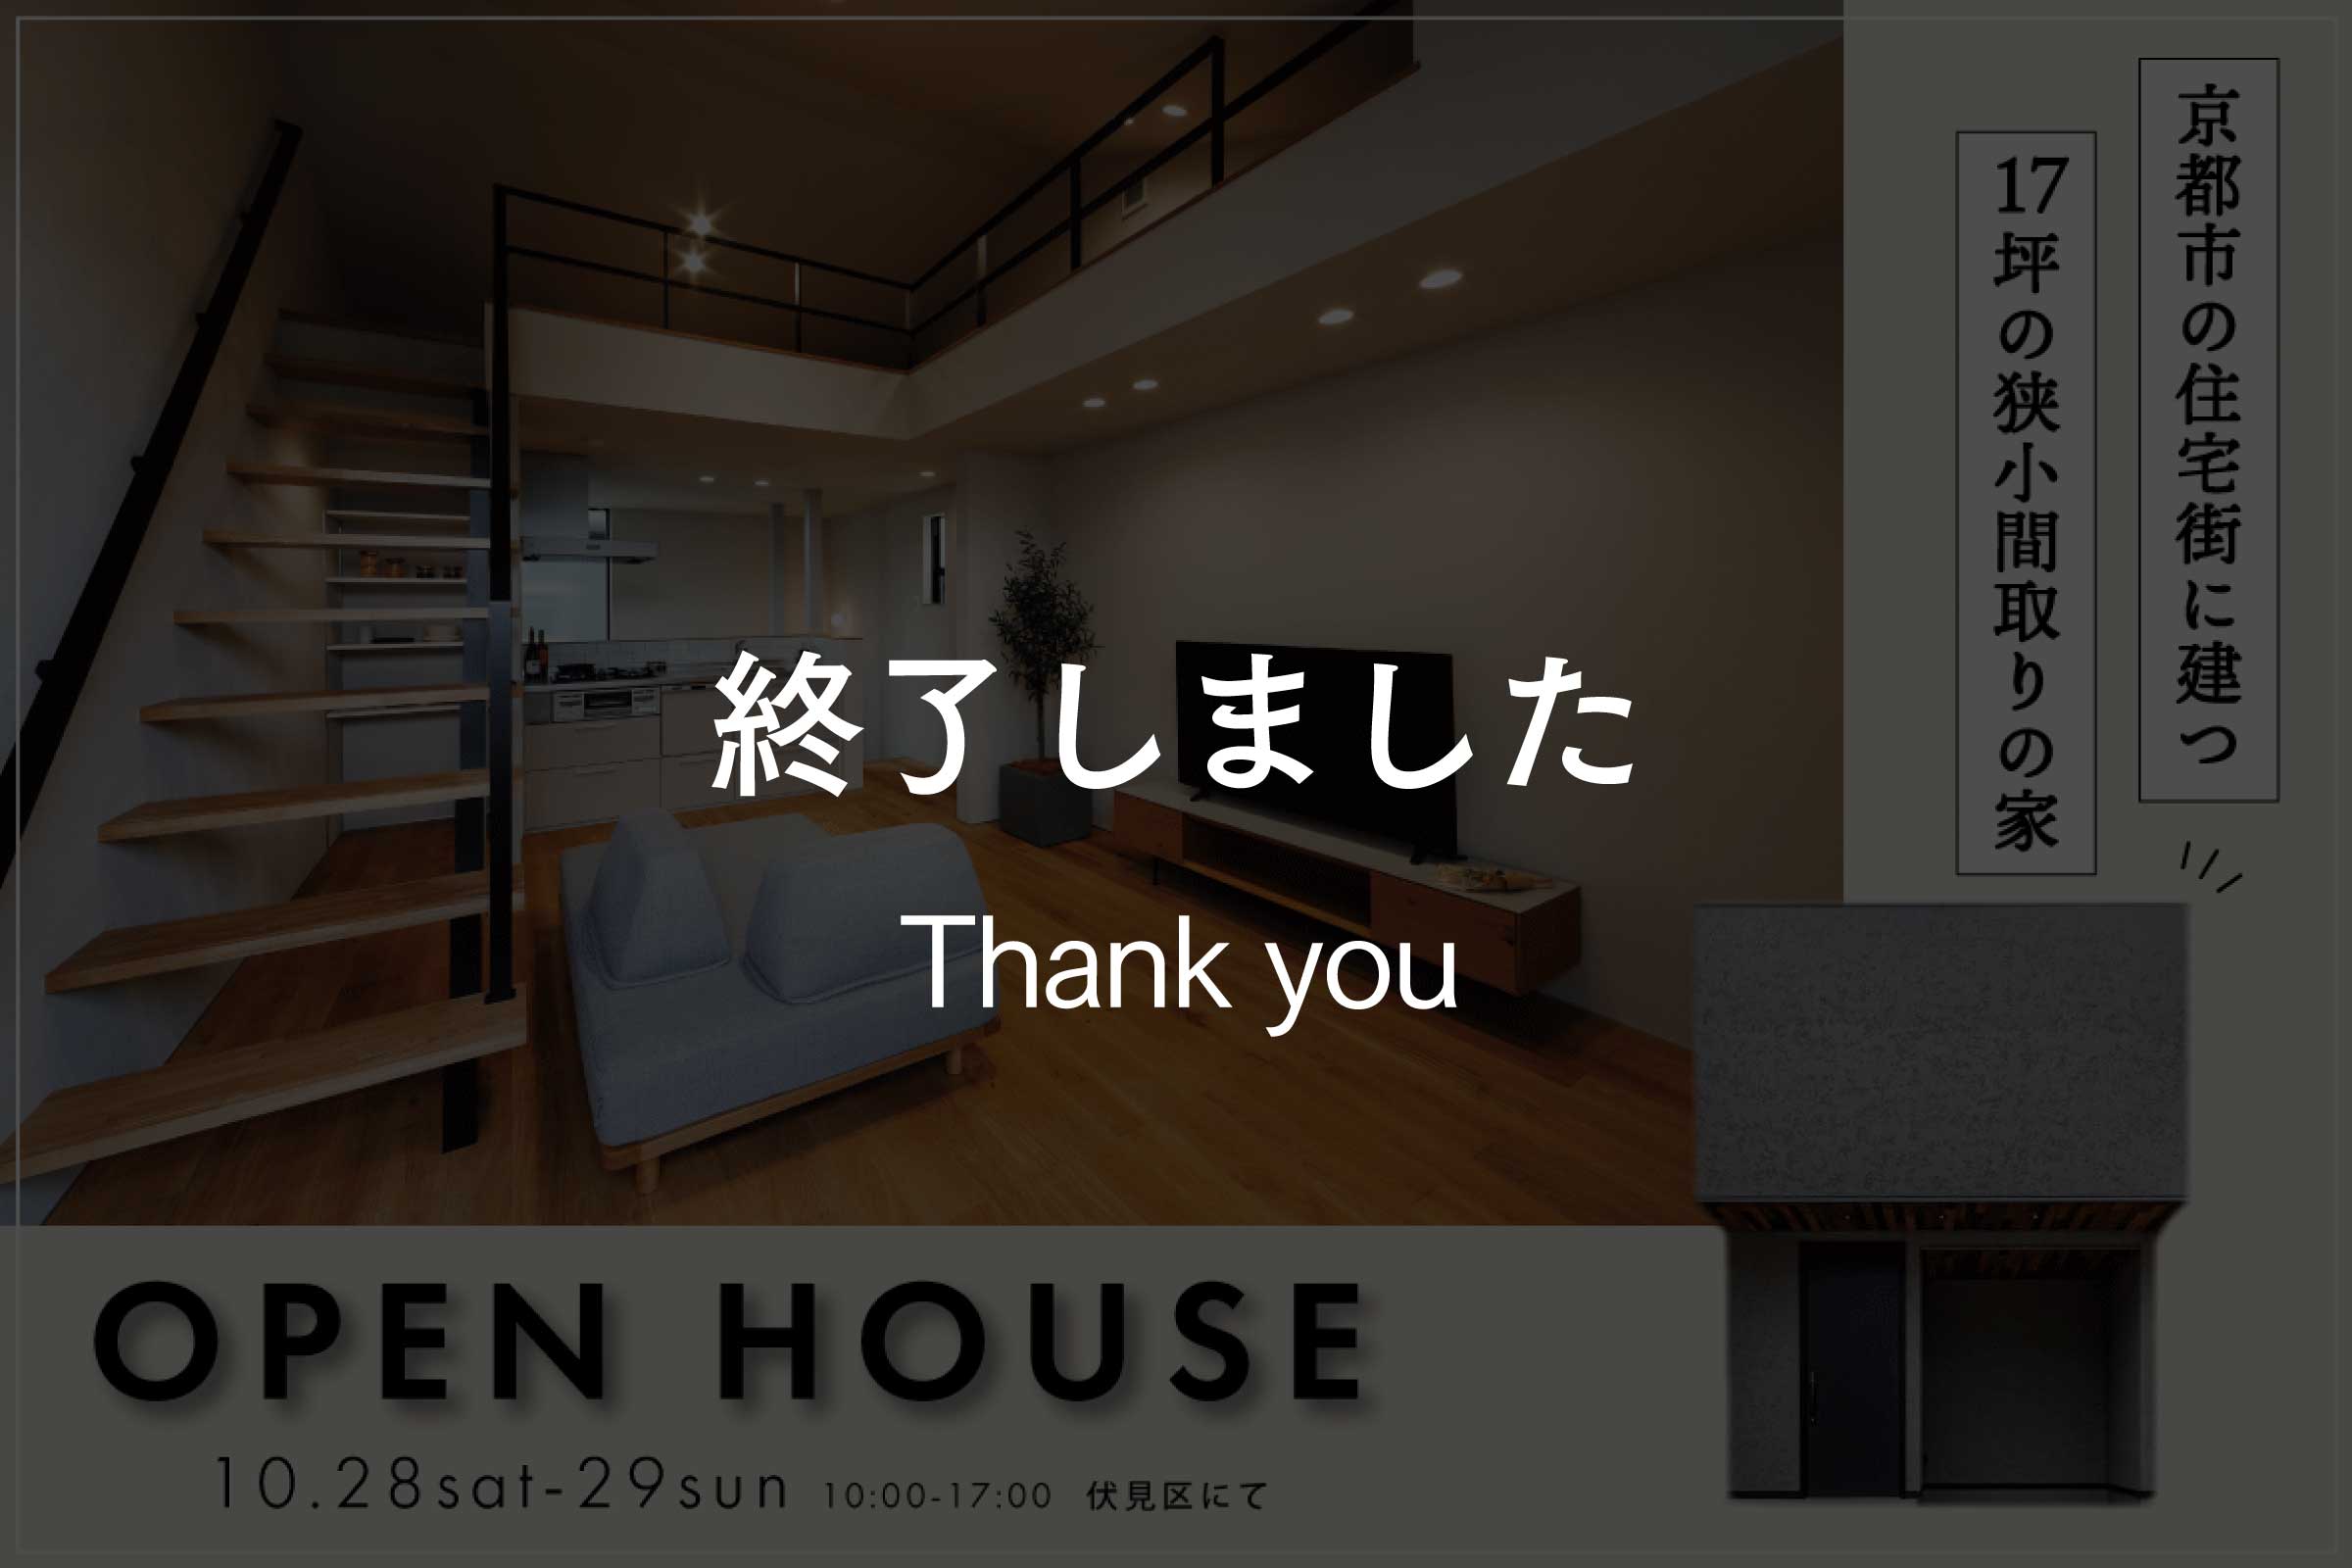 【予約制見学会】京都市の住宅街に建つ17坪の狭小間取りの家